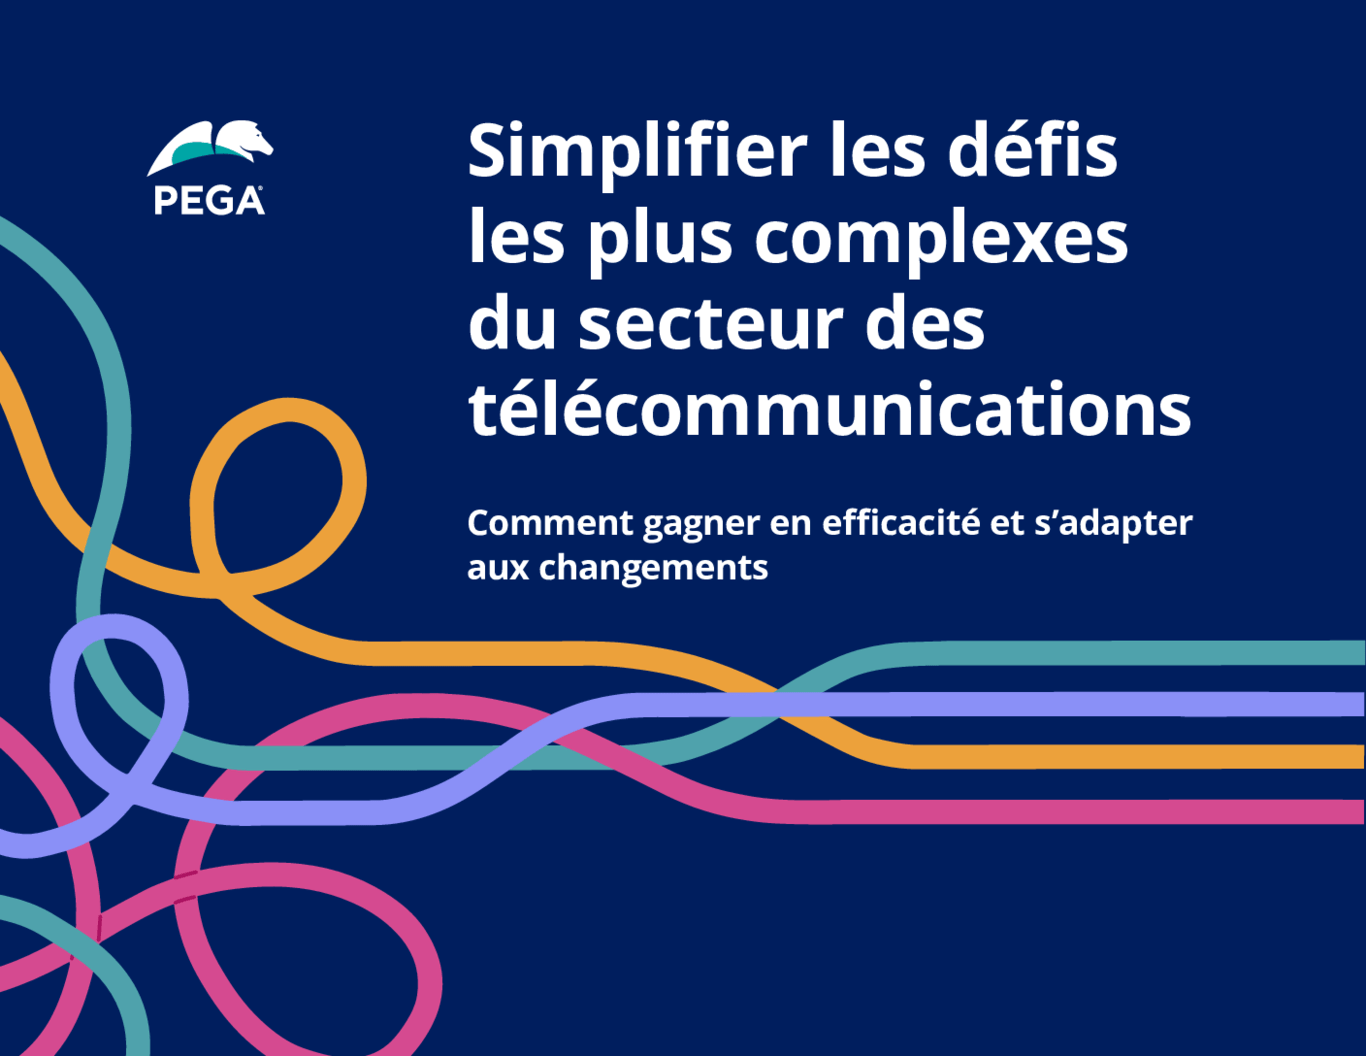 Simplifier les défis les plus complexes du secteur des télécommunications